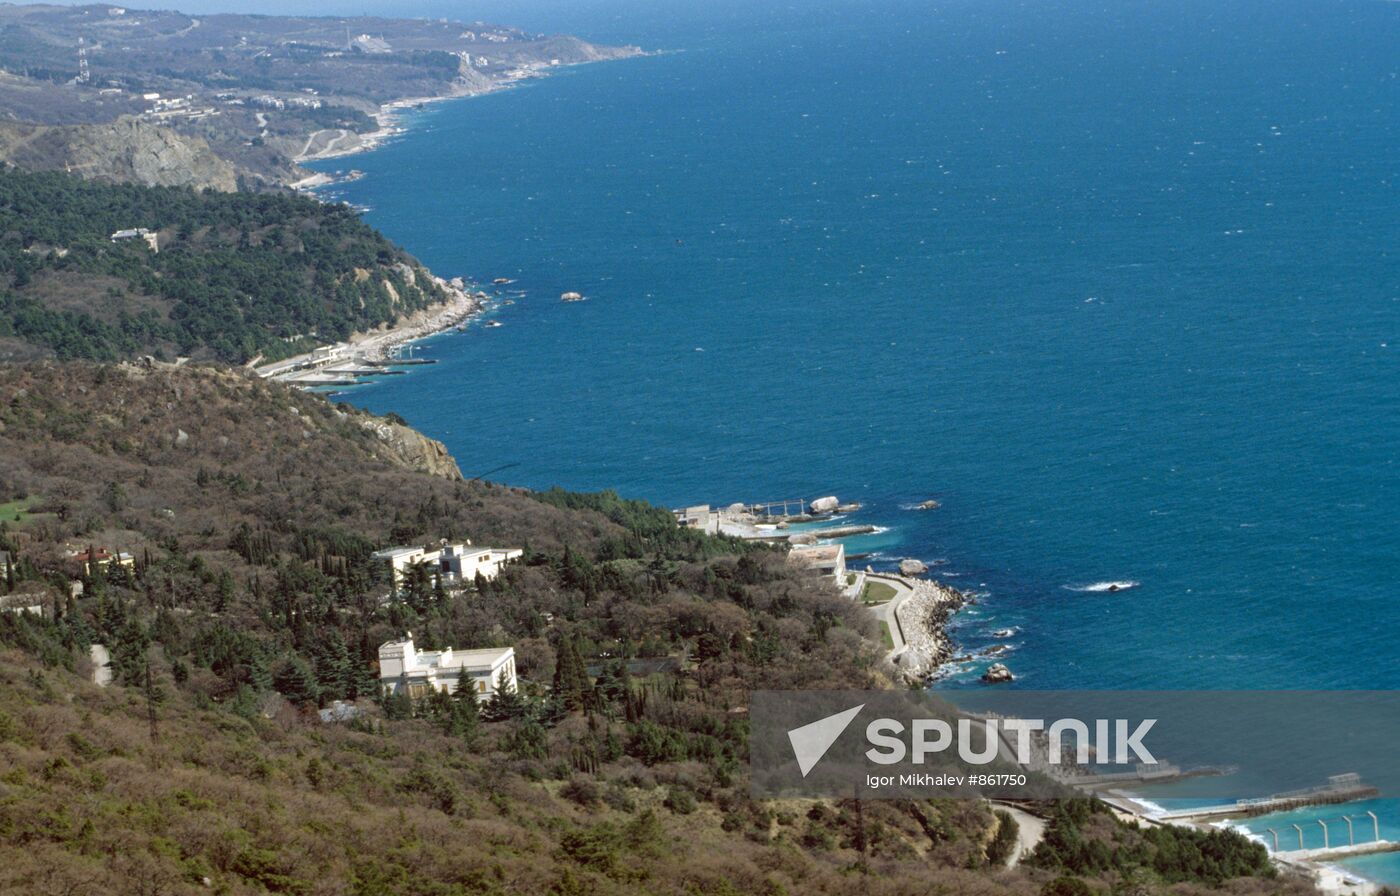 The city of Yalta on the Black Sea shore, the Crimea